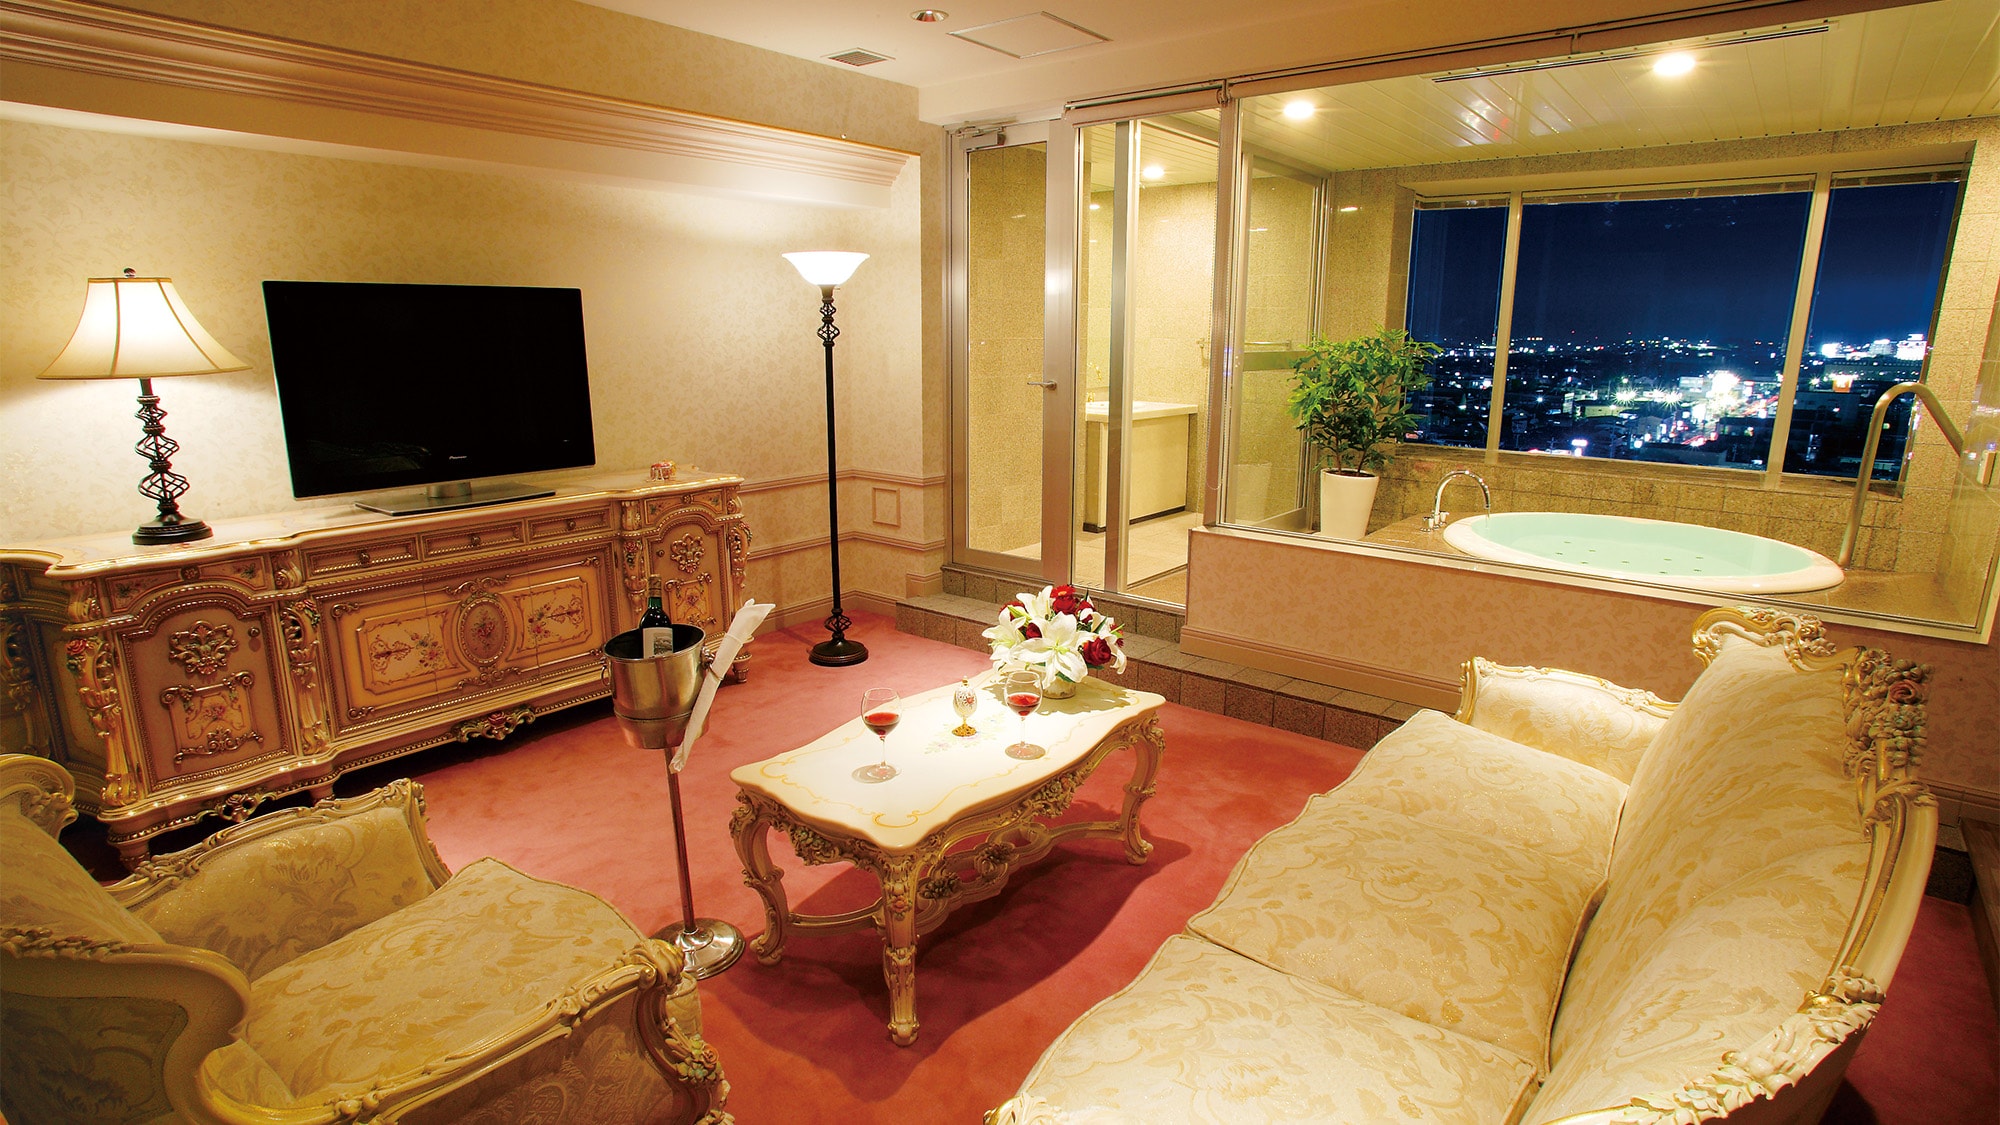 【豪華房】帶按摩浴缸的日西合璧式客房